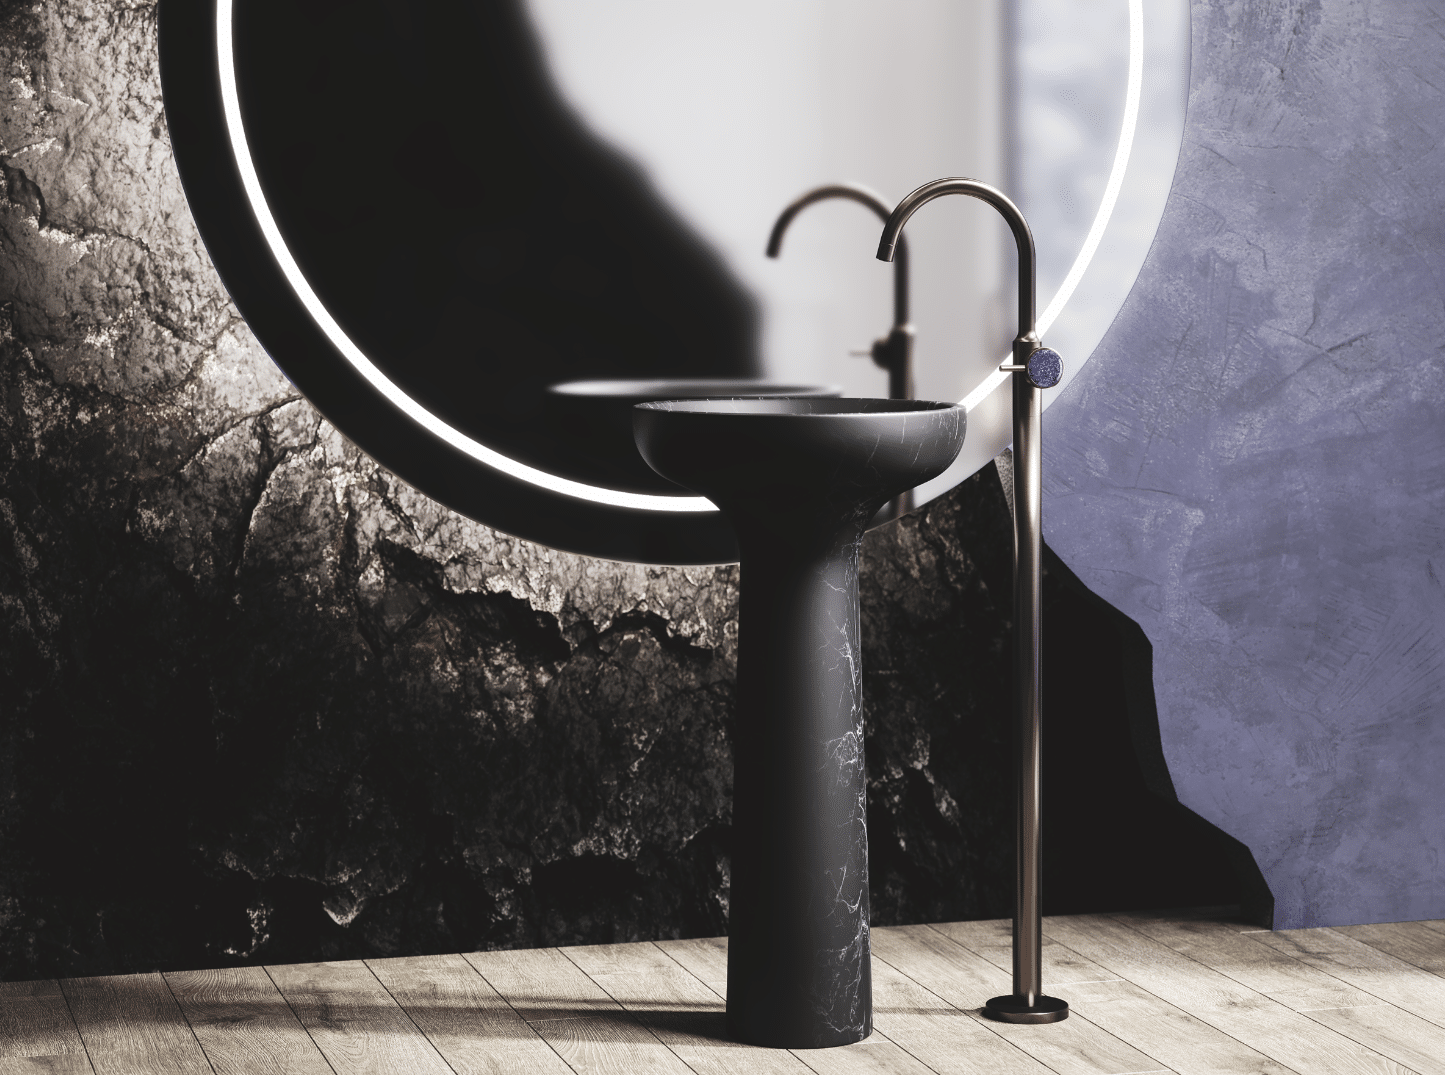 Moderne Eleganz und luxuriöser Purismus – italienisches Design von Antonio Lupi und Jörger im Einklang. Sehr ästhetisch dazu der große, runde Spiegel mit LED-Beleuchtung. Fast dramatische Schönheit entsteht durch die schwarzen, felsenartigen Steinwände.